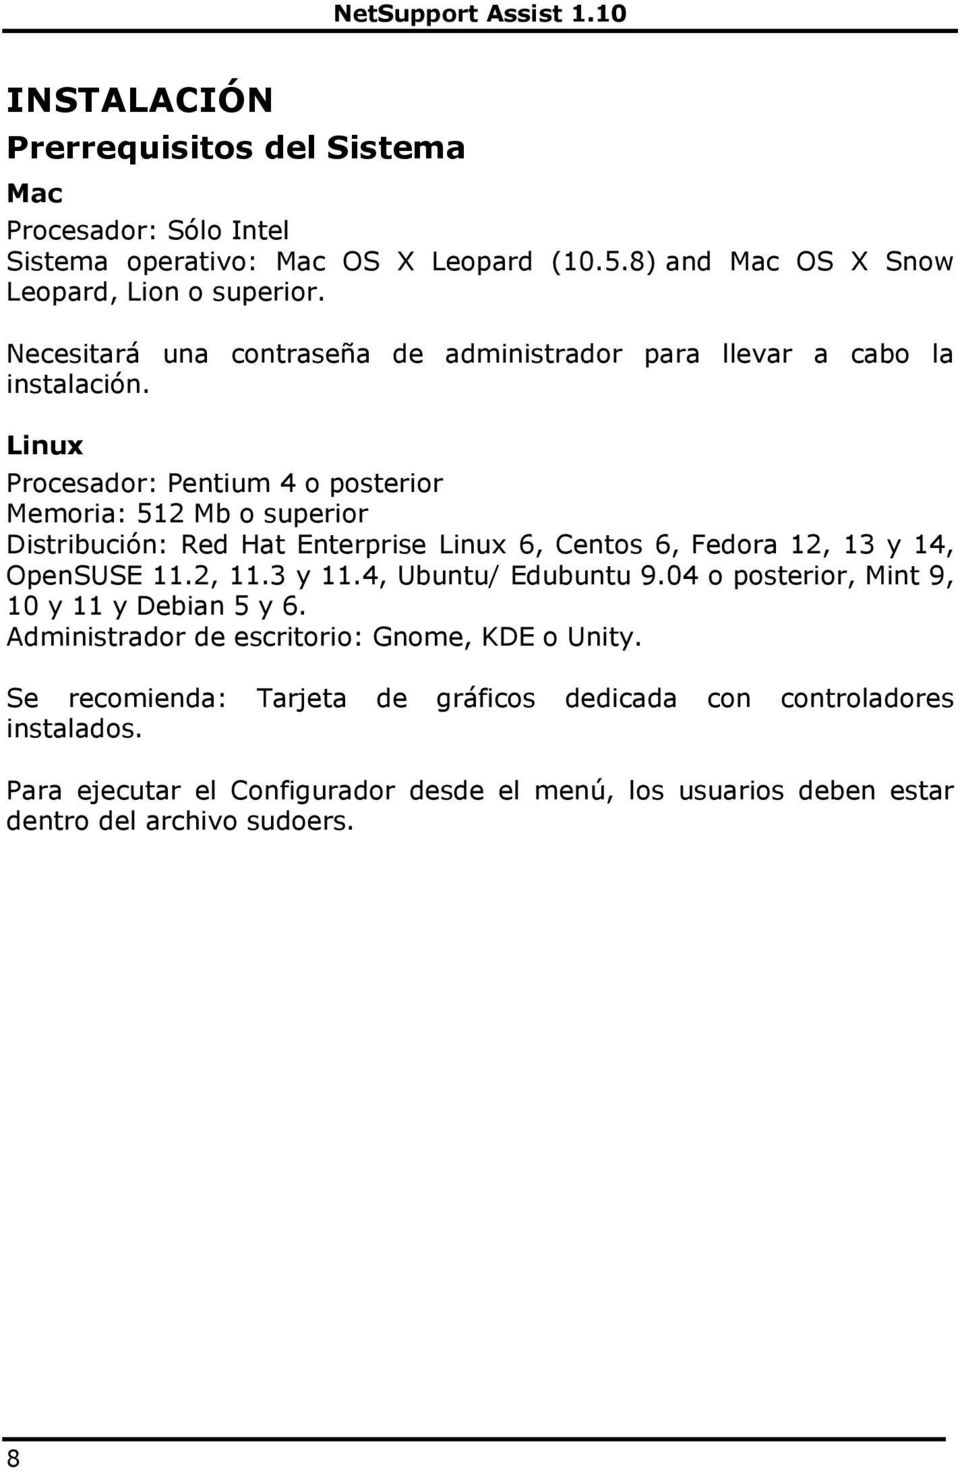 Linux Procesador: Pentium 4 o posterior Memoria: 512 Mb o superior Distribución: Red Hat Enterprise Linux 6, Centos 6, Fedora 12, 13 y 14, OpenSUSE 11.2, 11.3 y 11.